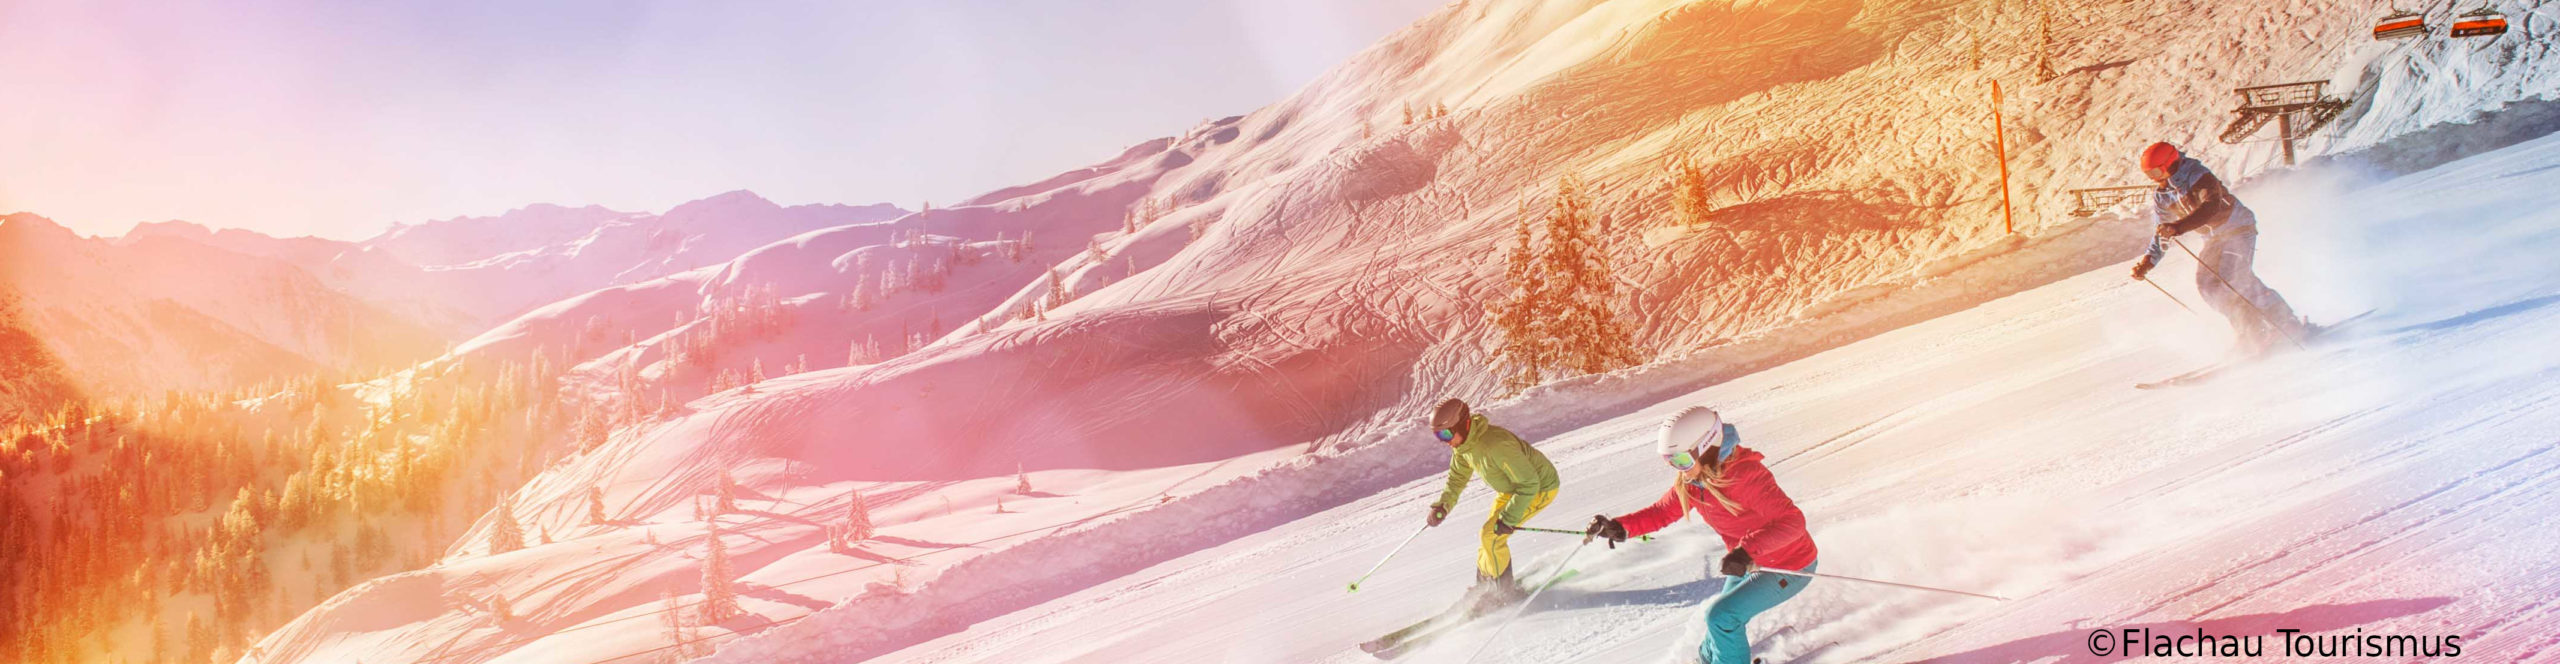 FLACHAU – ZAUCHENSEE- SkiWochenende – PistenSpaß in der 3 Täler Skischaukel 3 Sterne Hotel in Altenmarkt – ab Donnerstag Nachmittag 